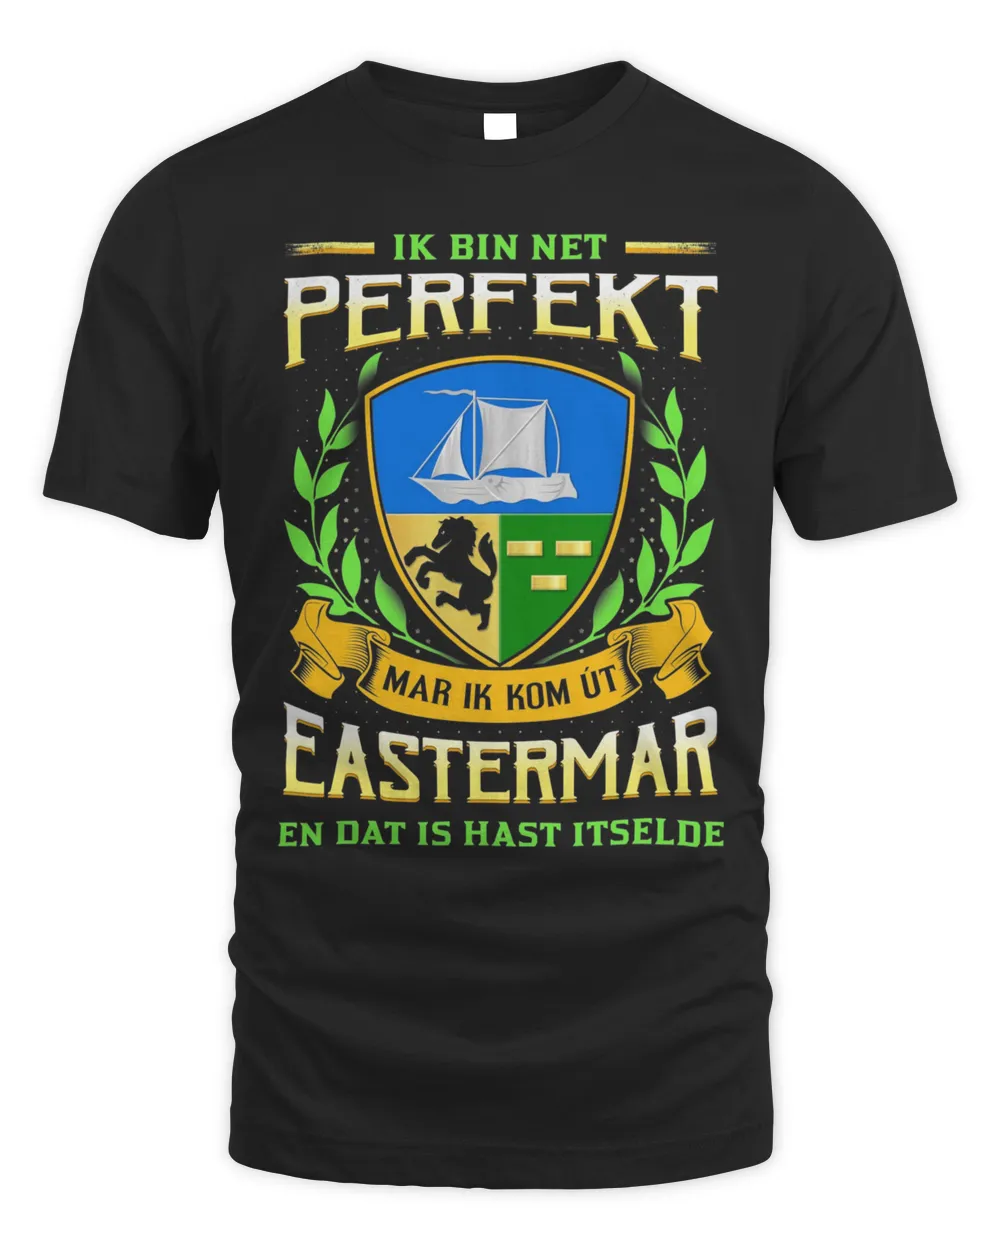 Ik Bin Net Perfekt Mar Ik Kom Út Eastermar En Dat Is Hast Itselde Shirt